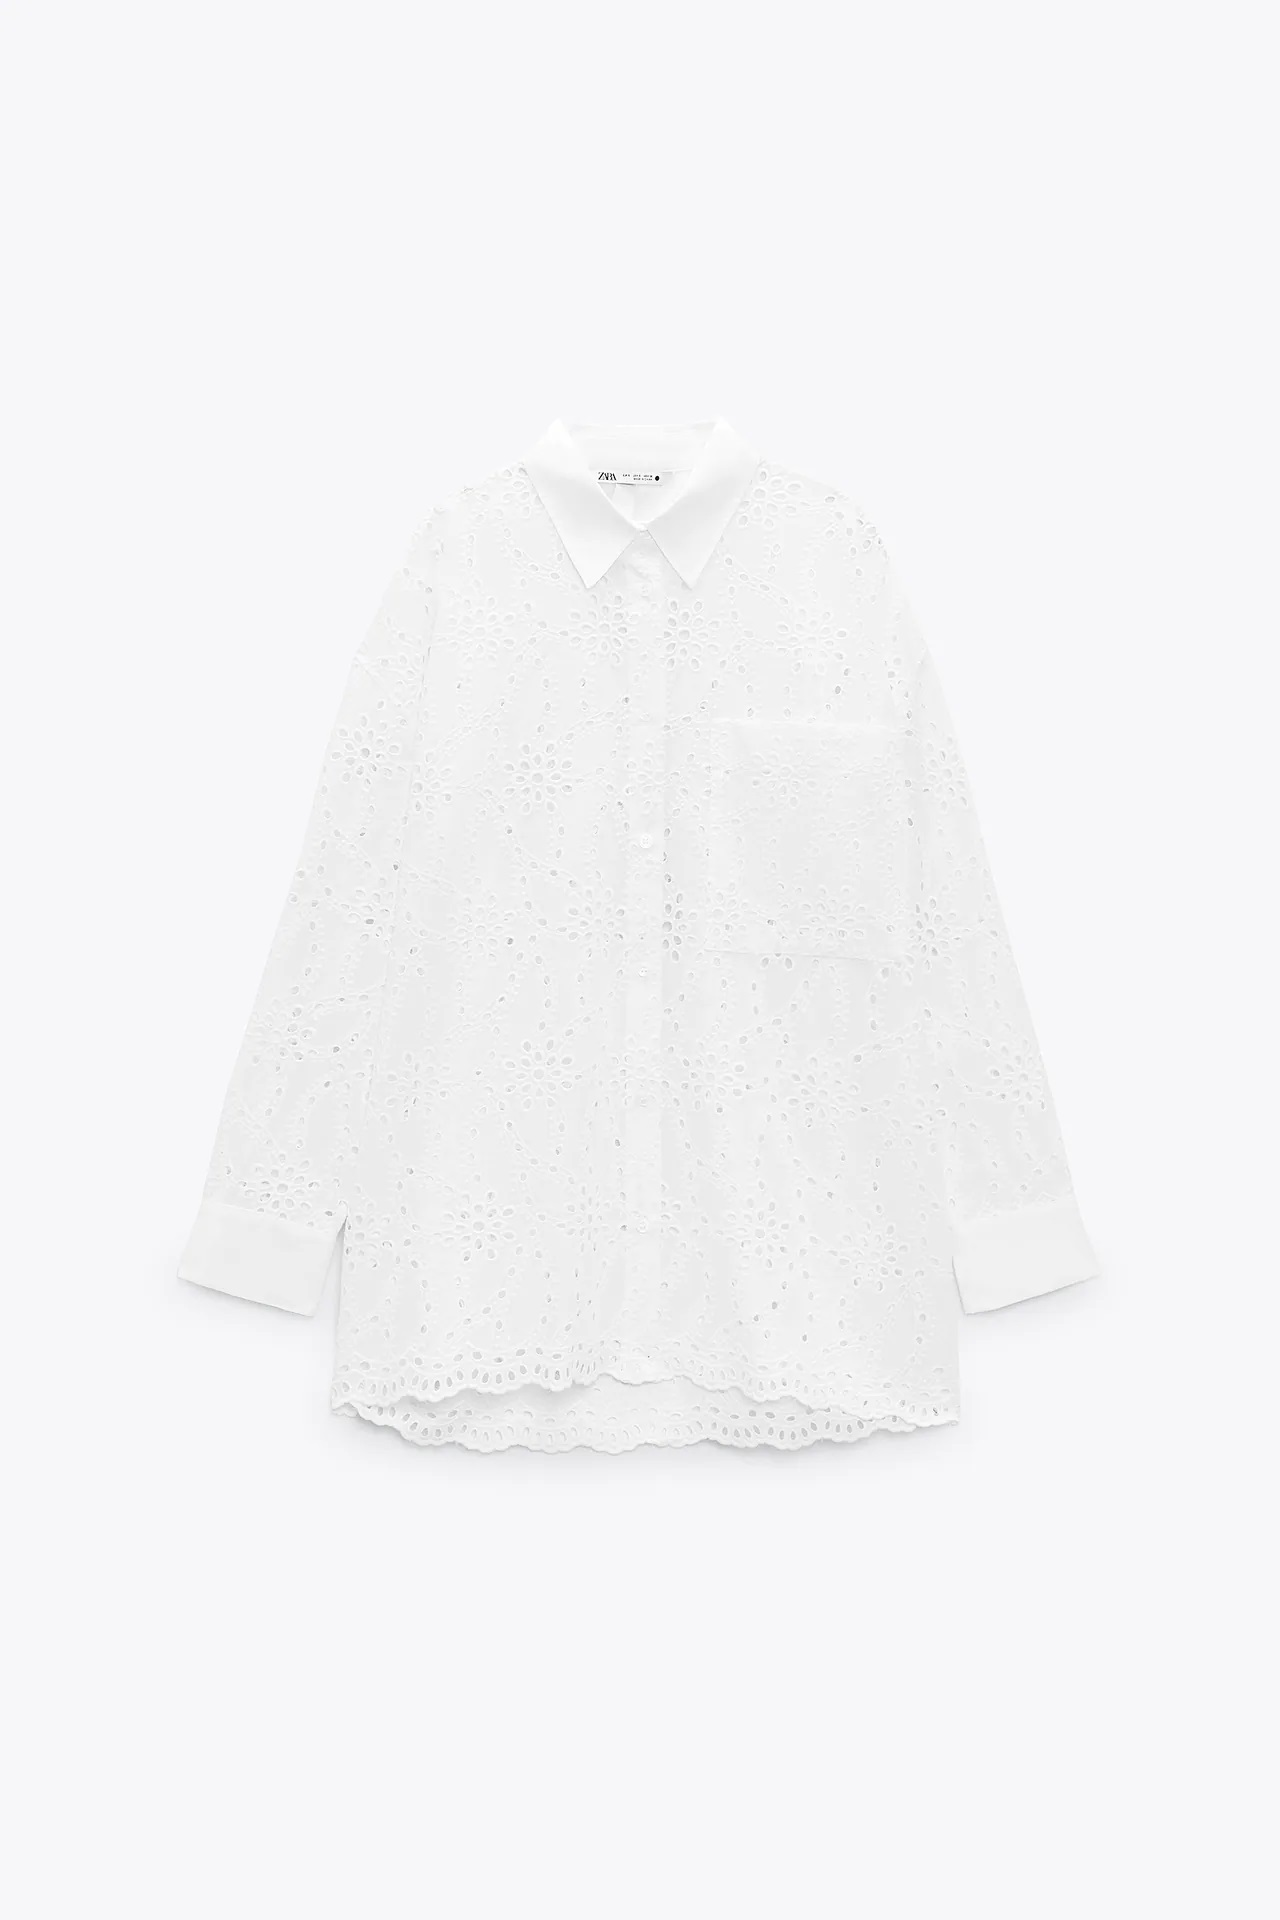 De Valentino a Zara, así es el clon de Inditex de una camisa de más de 2.000 euros